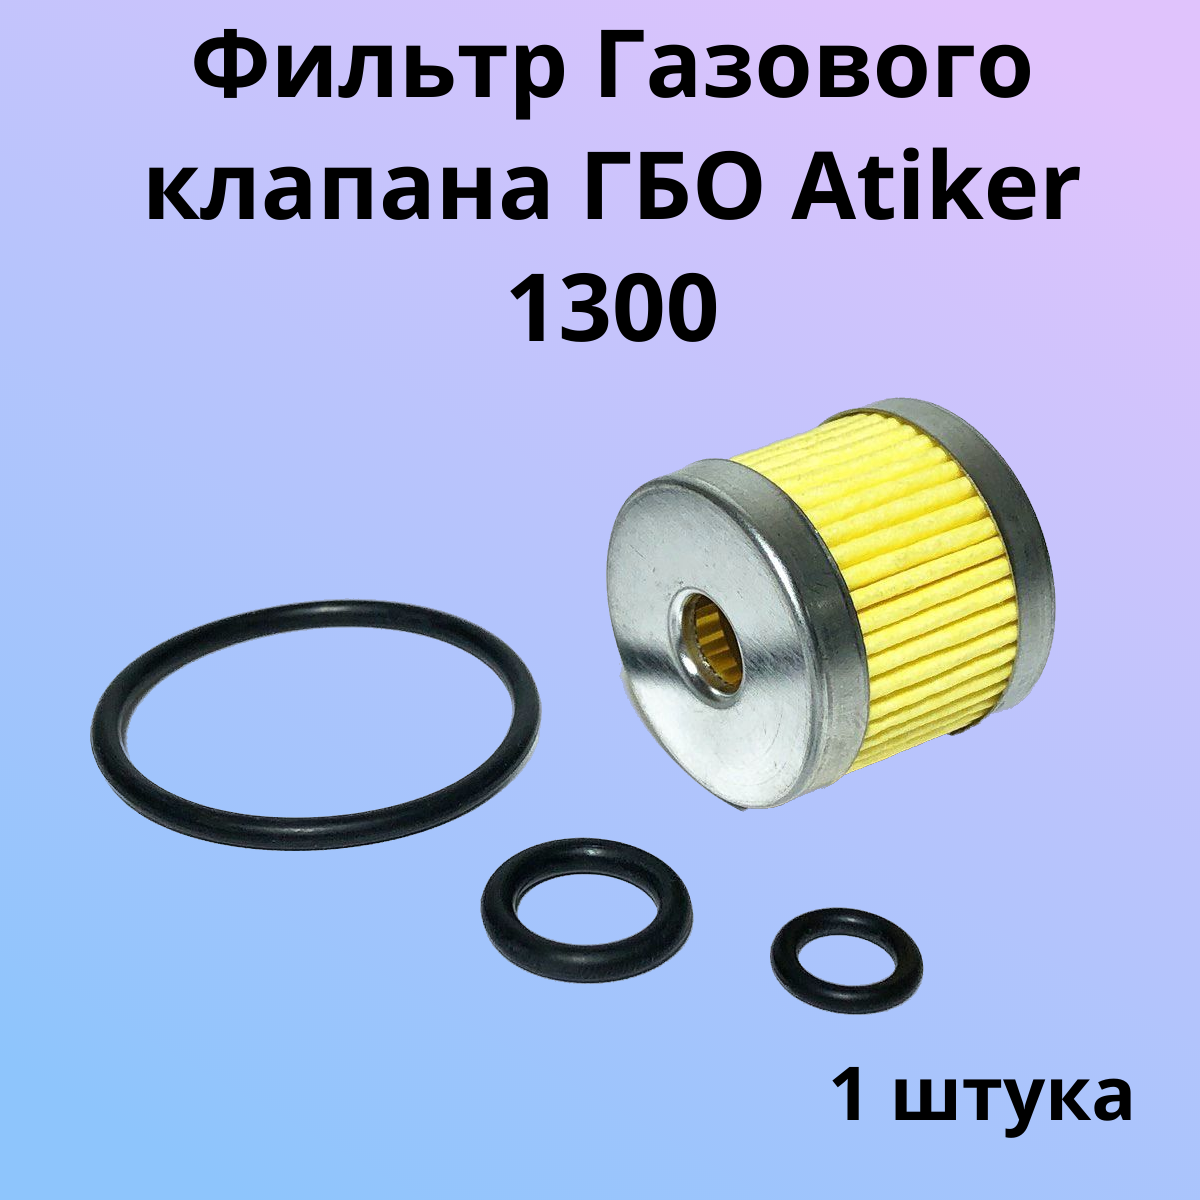 Фильтр газового клапана Atiker 1300